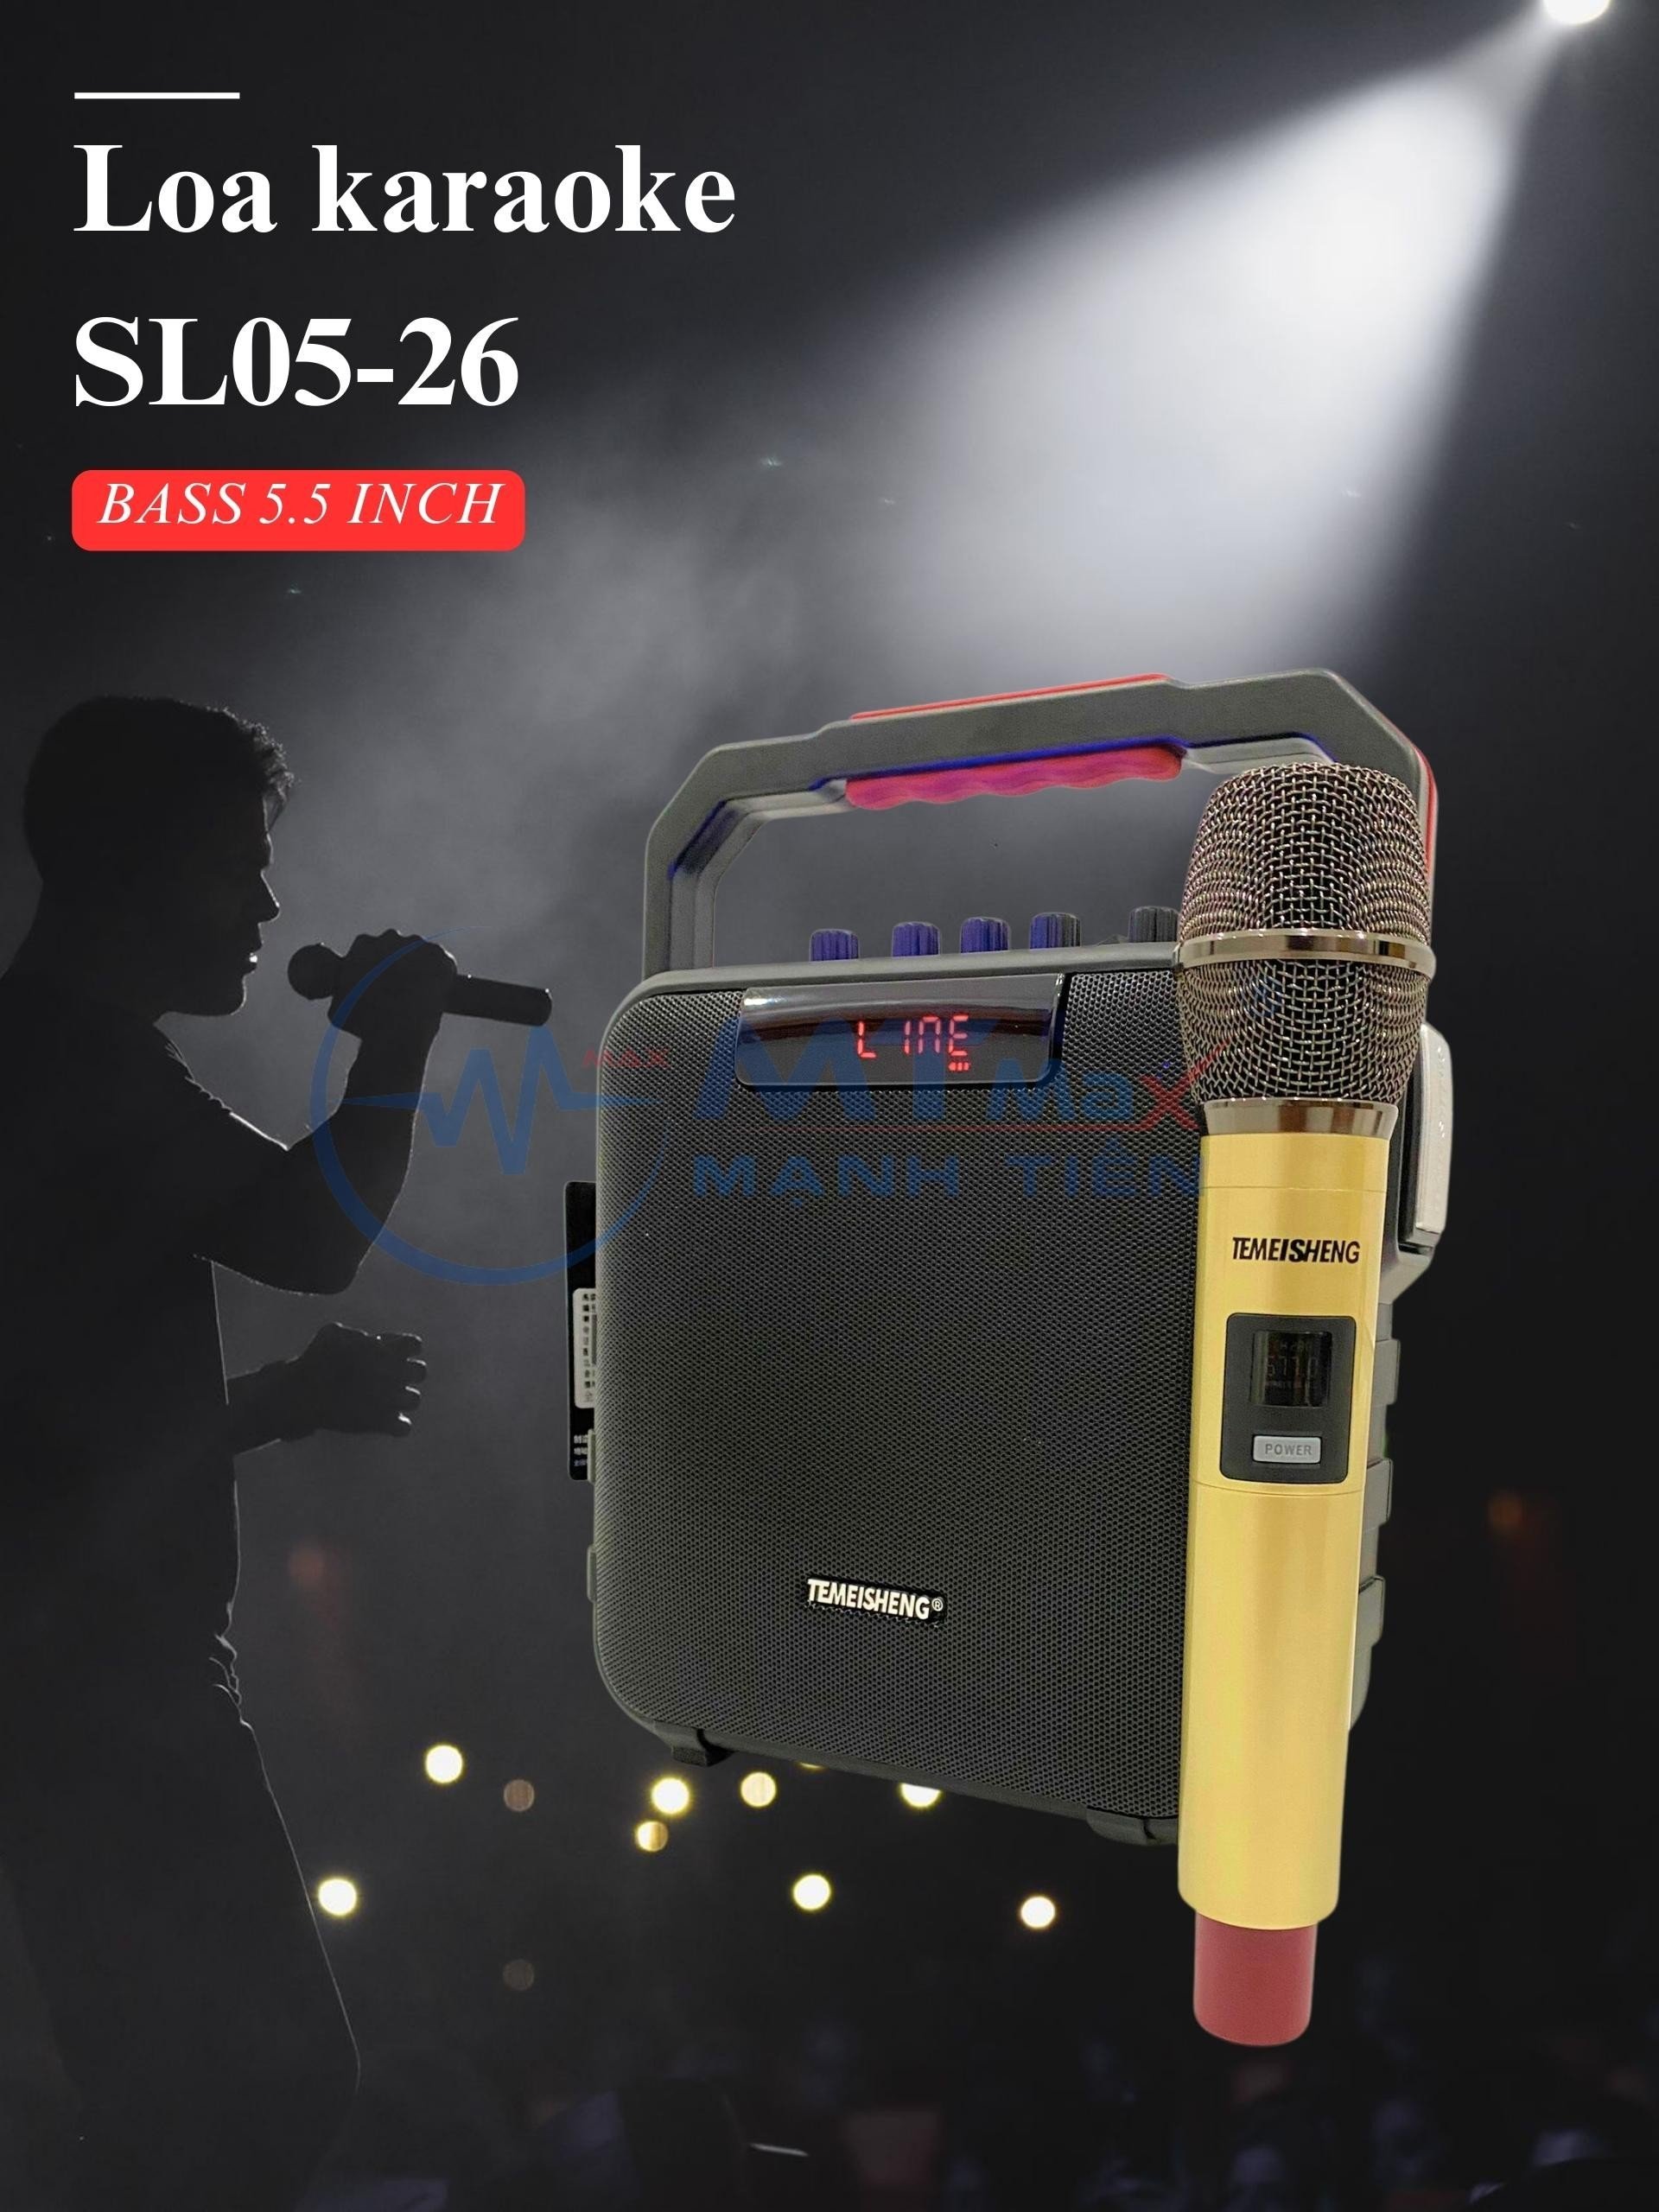 Loa Bluetooth Karaoke Temeisheng SL0526, Kèm 1 Micro Không Dây Loa Karaoke Cao Cấp Âm Thanh Cực Hay Có Quai Xách